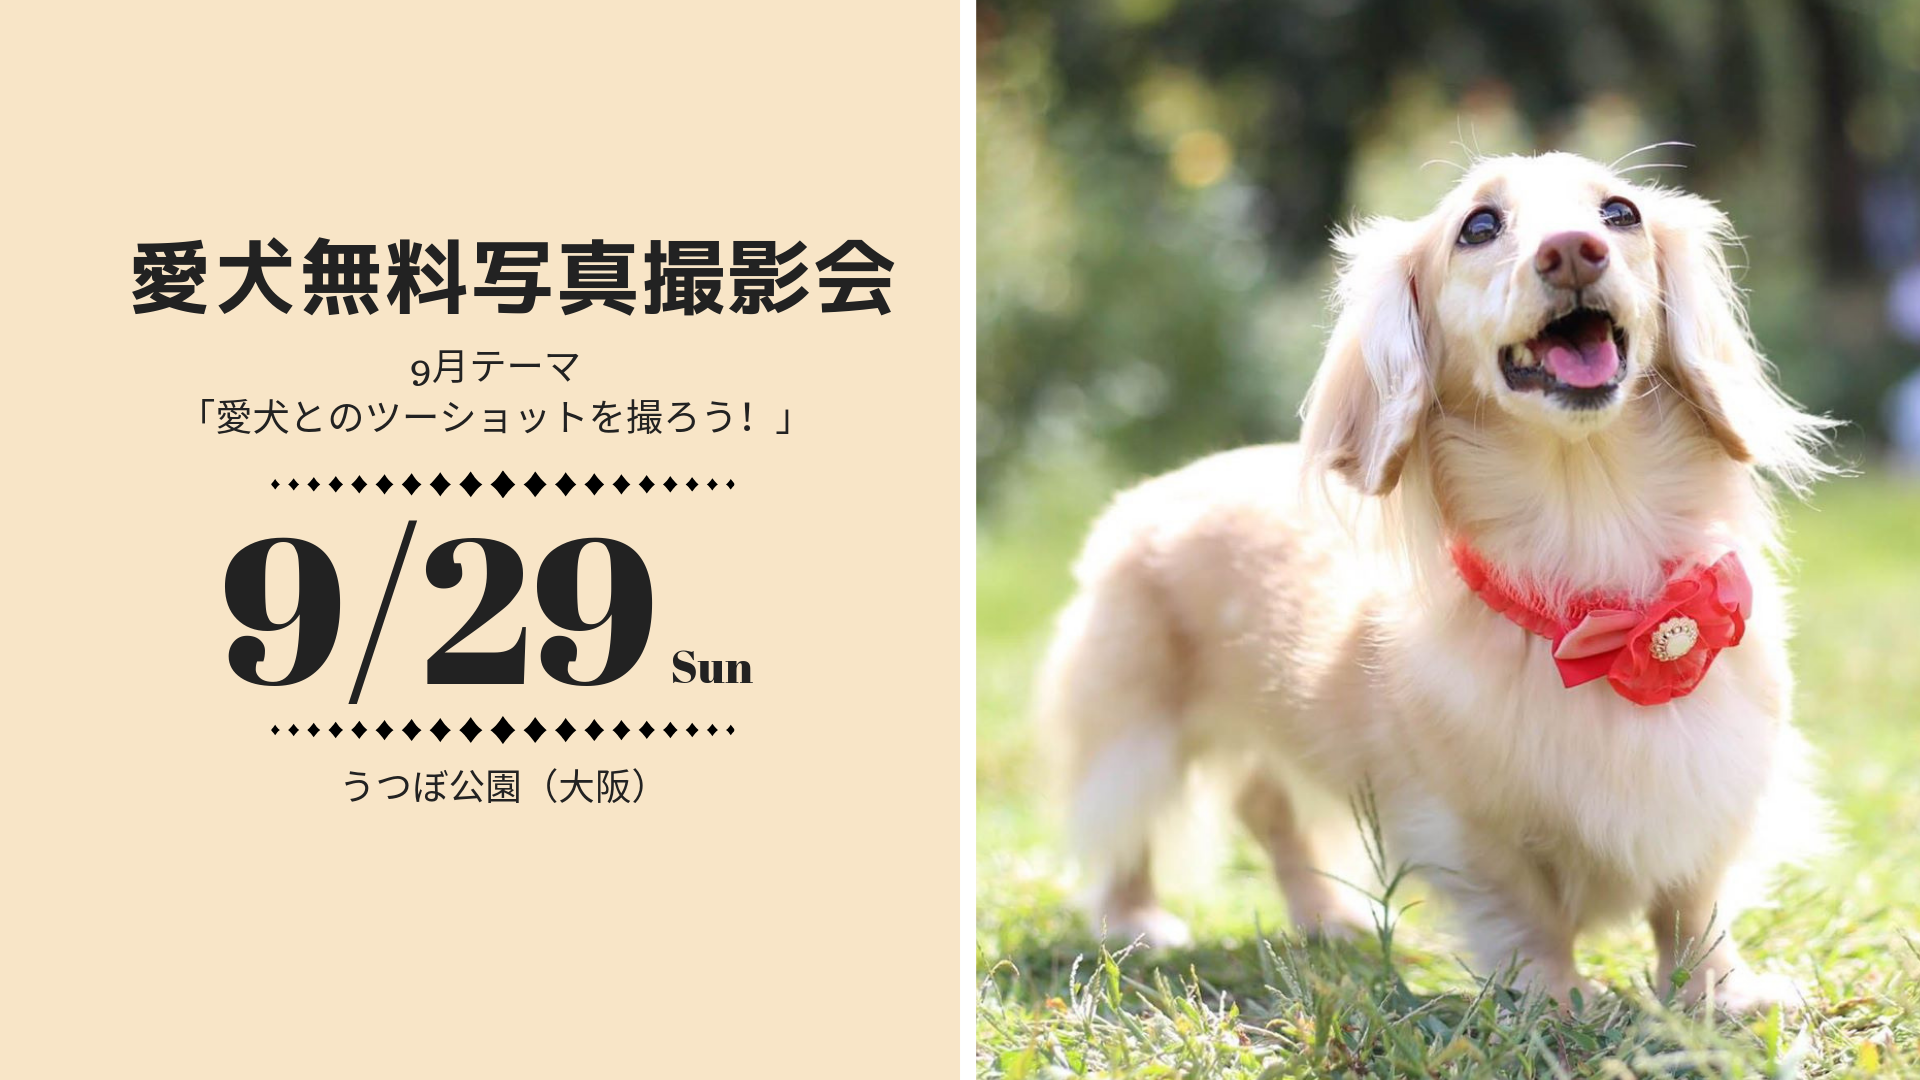 無料 愛犬写真撮影会 うつぼ公園 大阪 イベント詳細 9月のテーマは 愛犬とのツーショット おでかけわんこ部